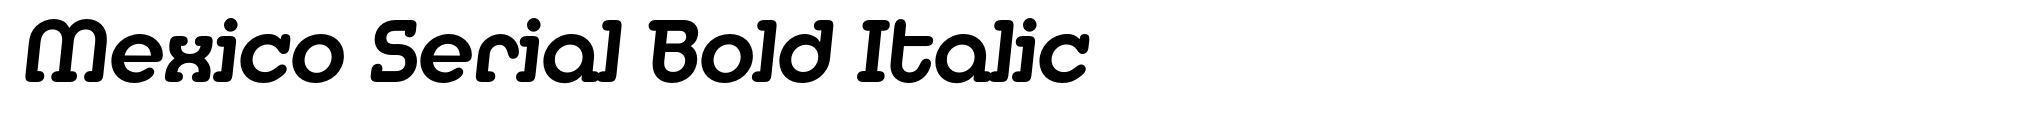 Mexico Serial Bold Italic image